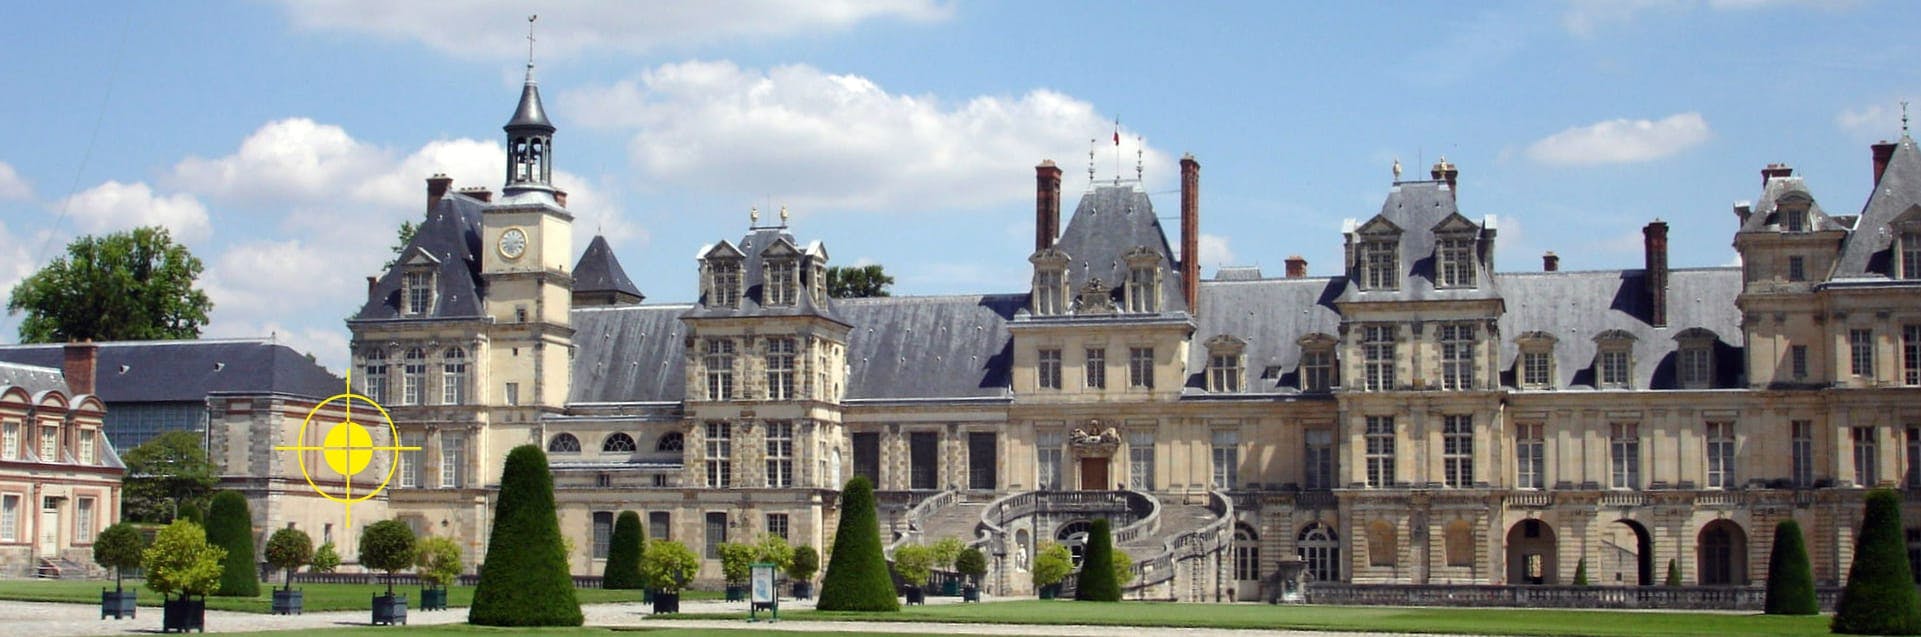 Fontainebleau castle front image